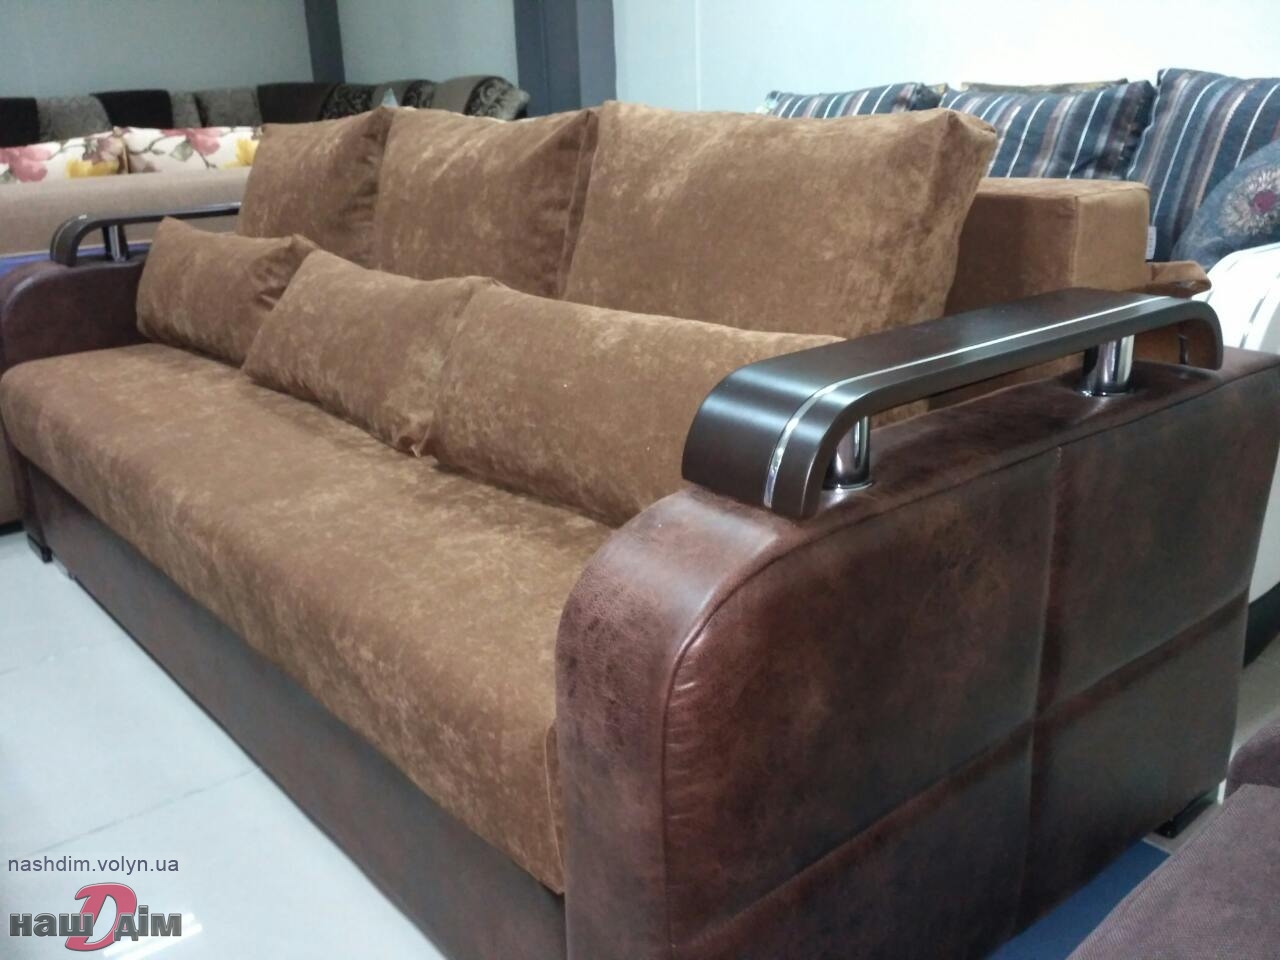 Ізабель диван - софа від Даніро ID460-2 матеріали та колір